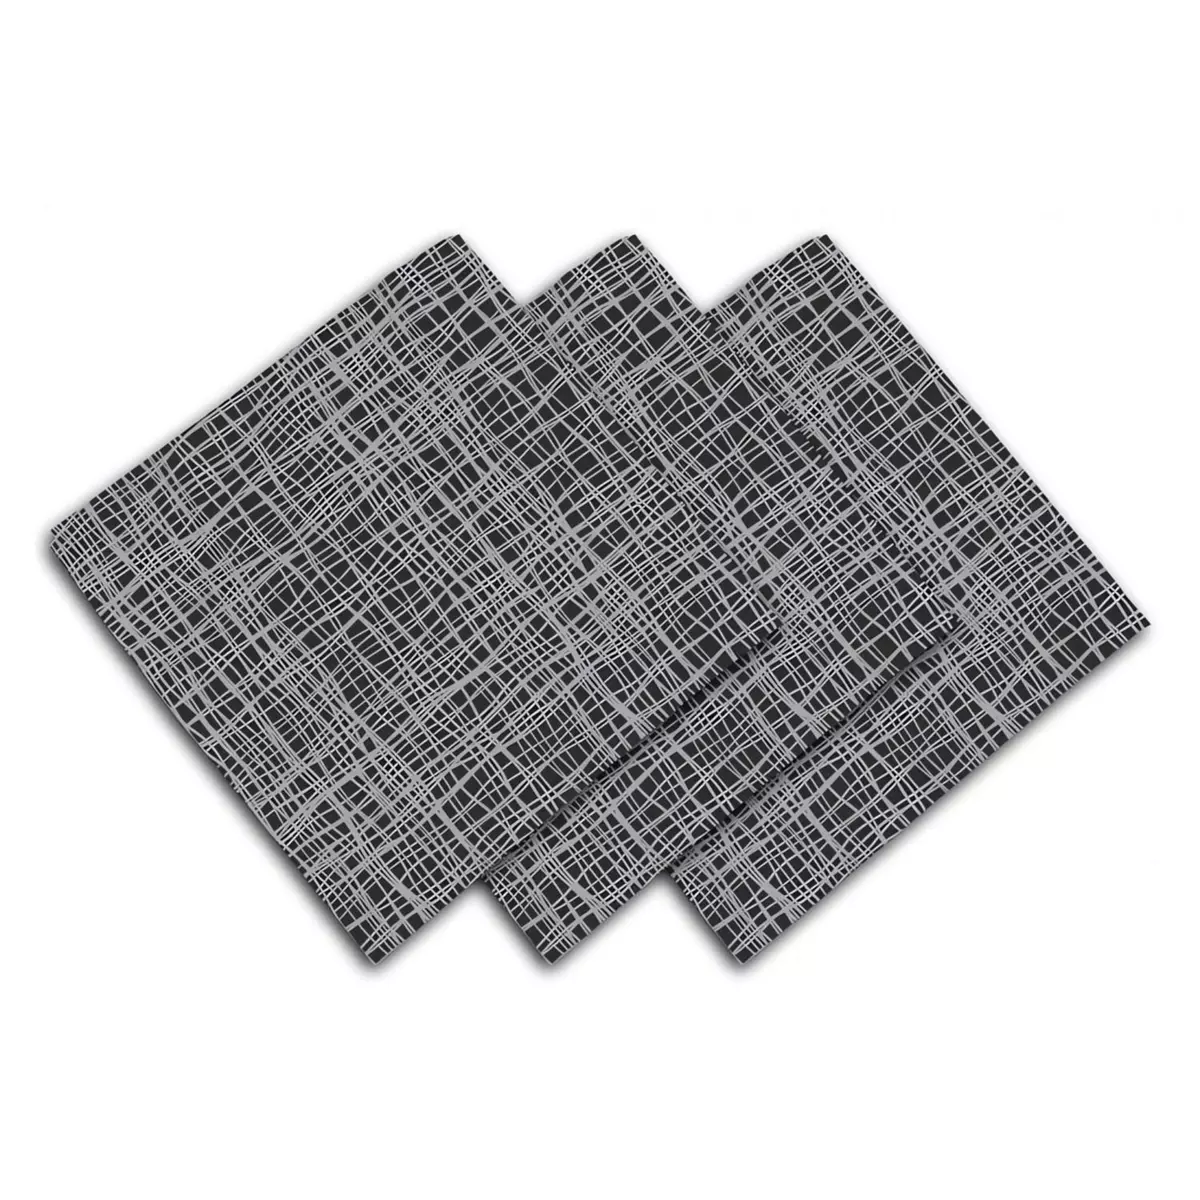 SOLEIL D'OCRE Lot de 3 serviettes de table 45x45 cm GALAXY noir, par Soleil d'ocre